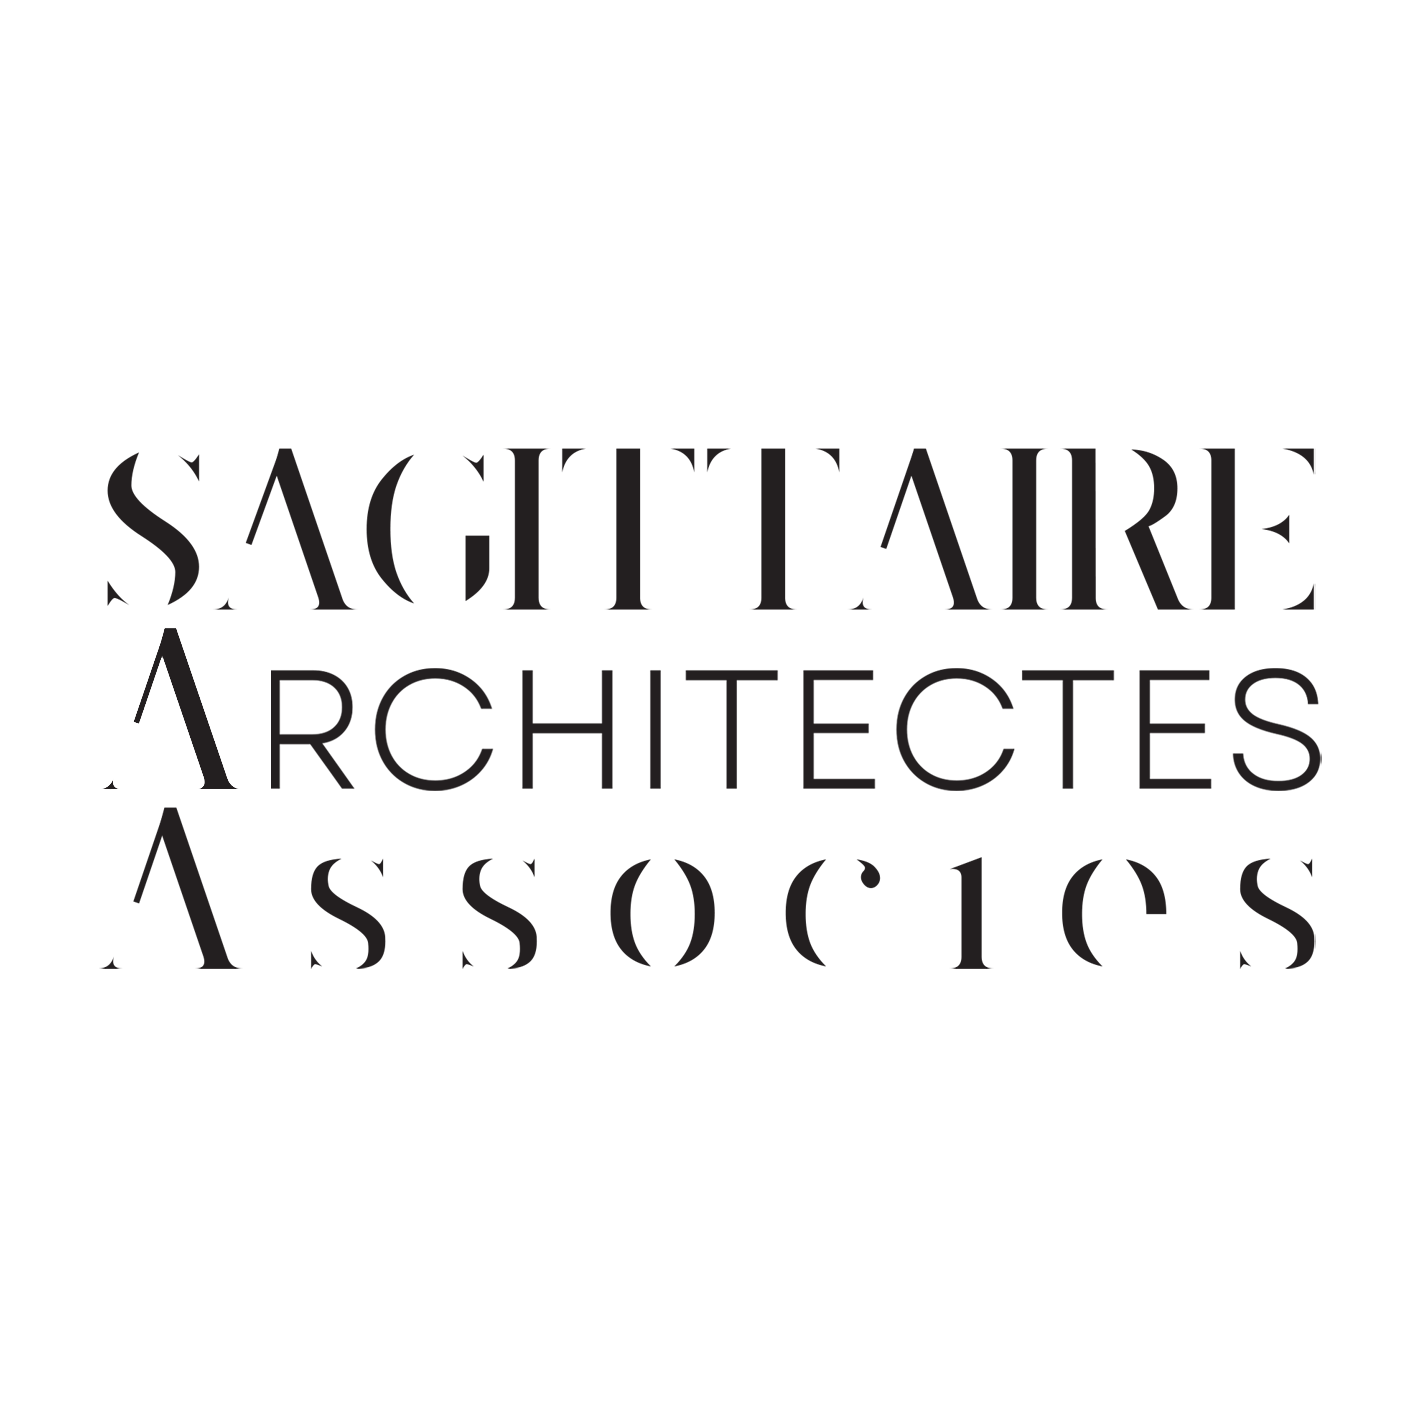 Sagittaire Architectes